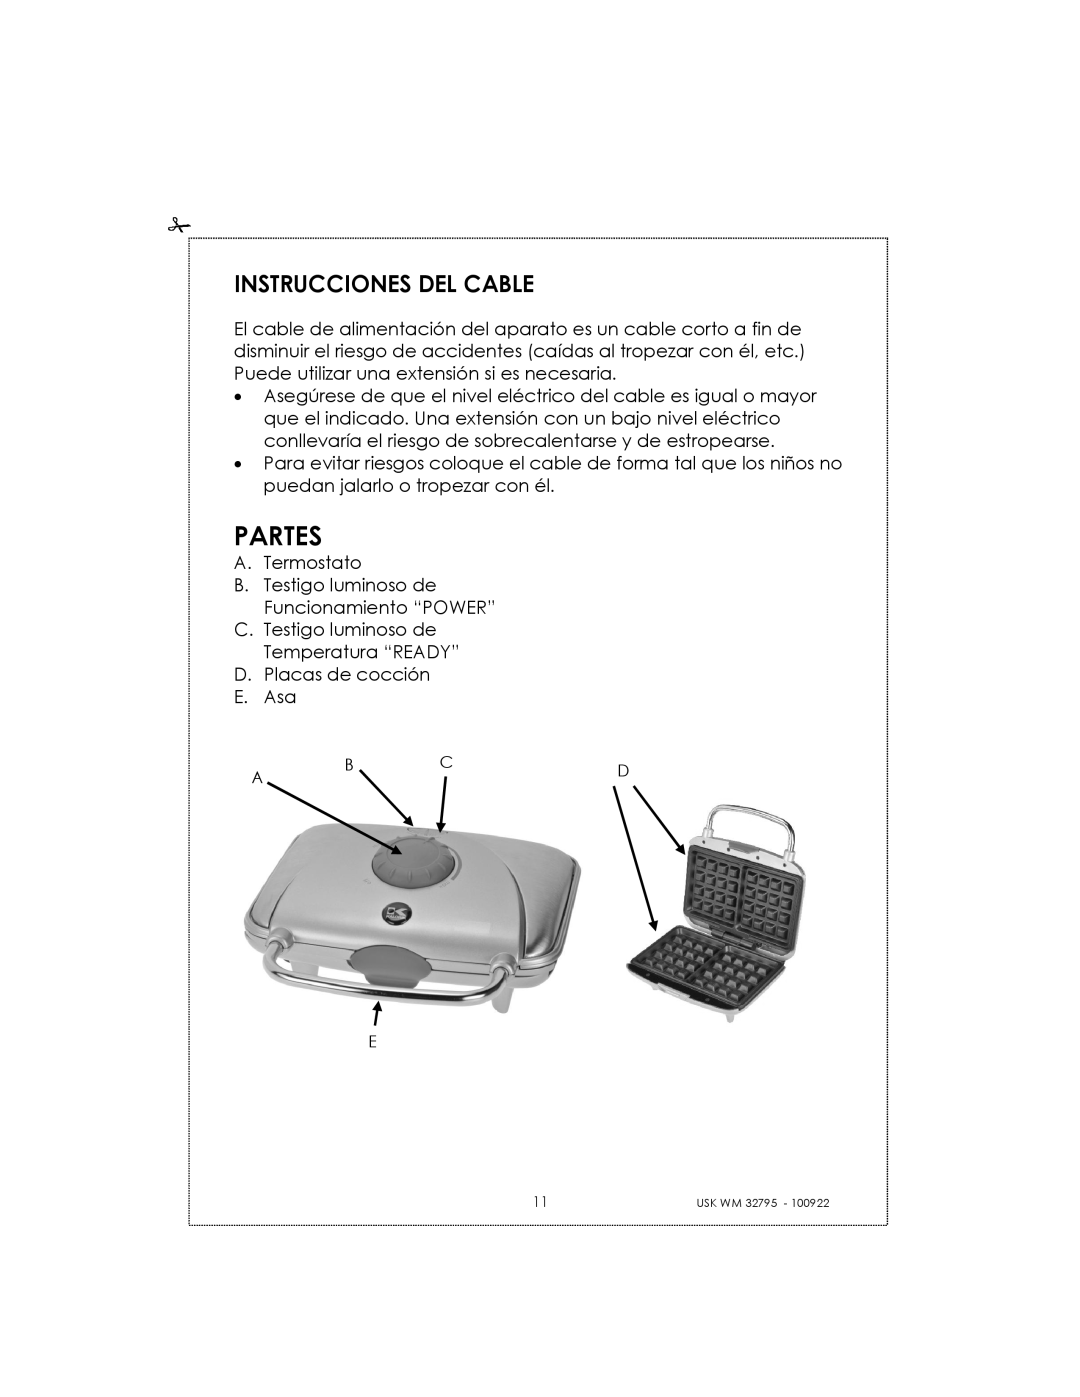 Kalorik USK WM 32795 manual Partes, Instrucciones Del Cable 